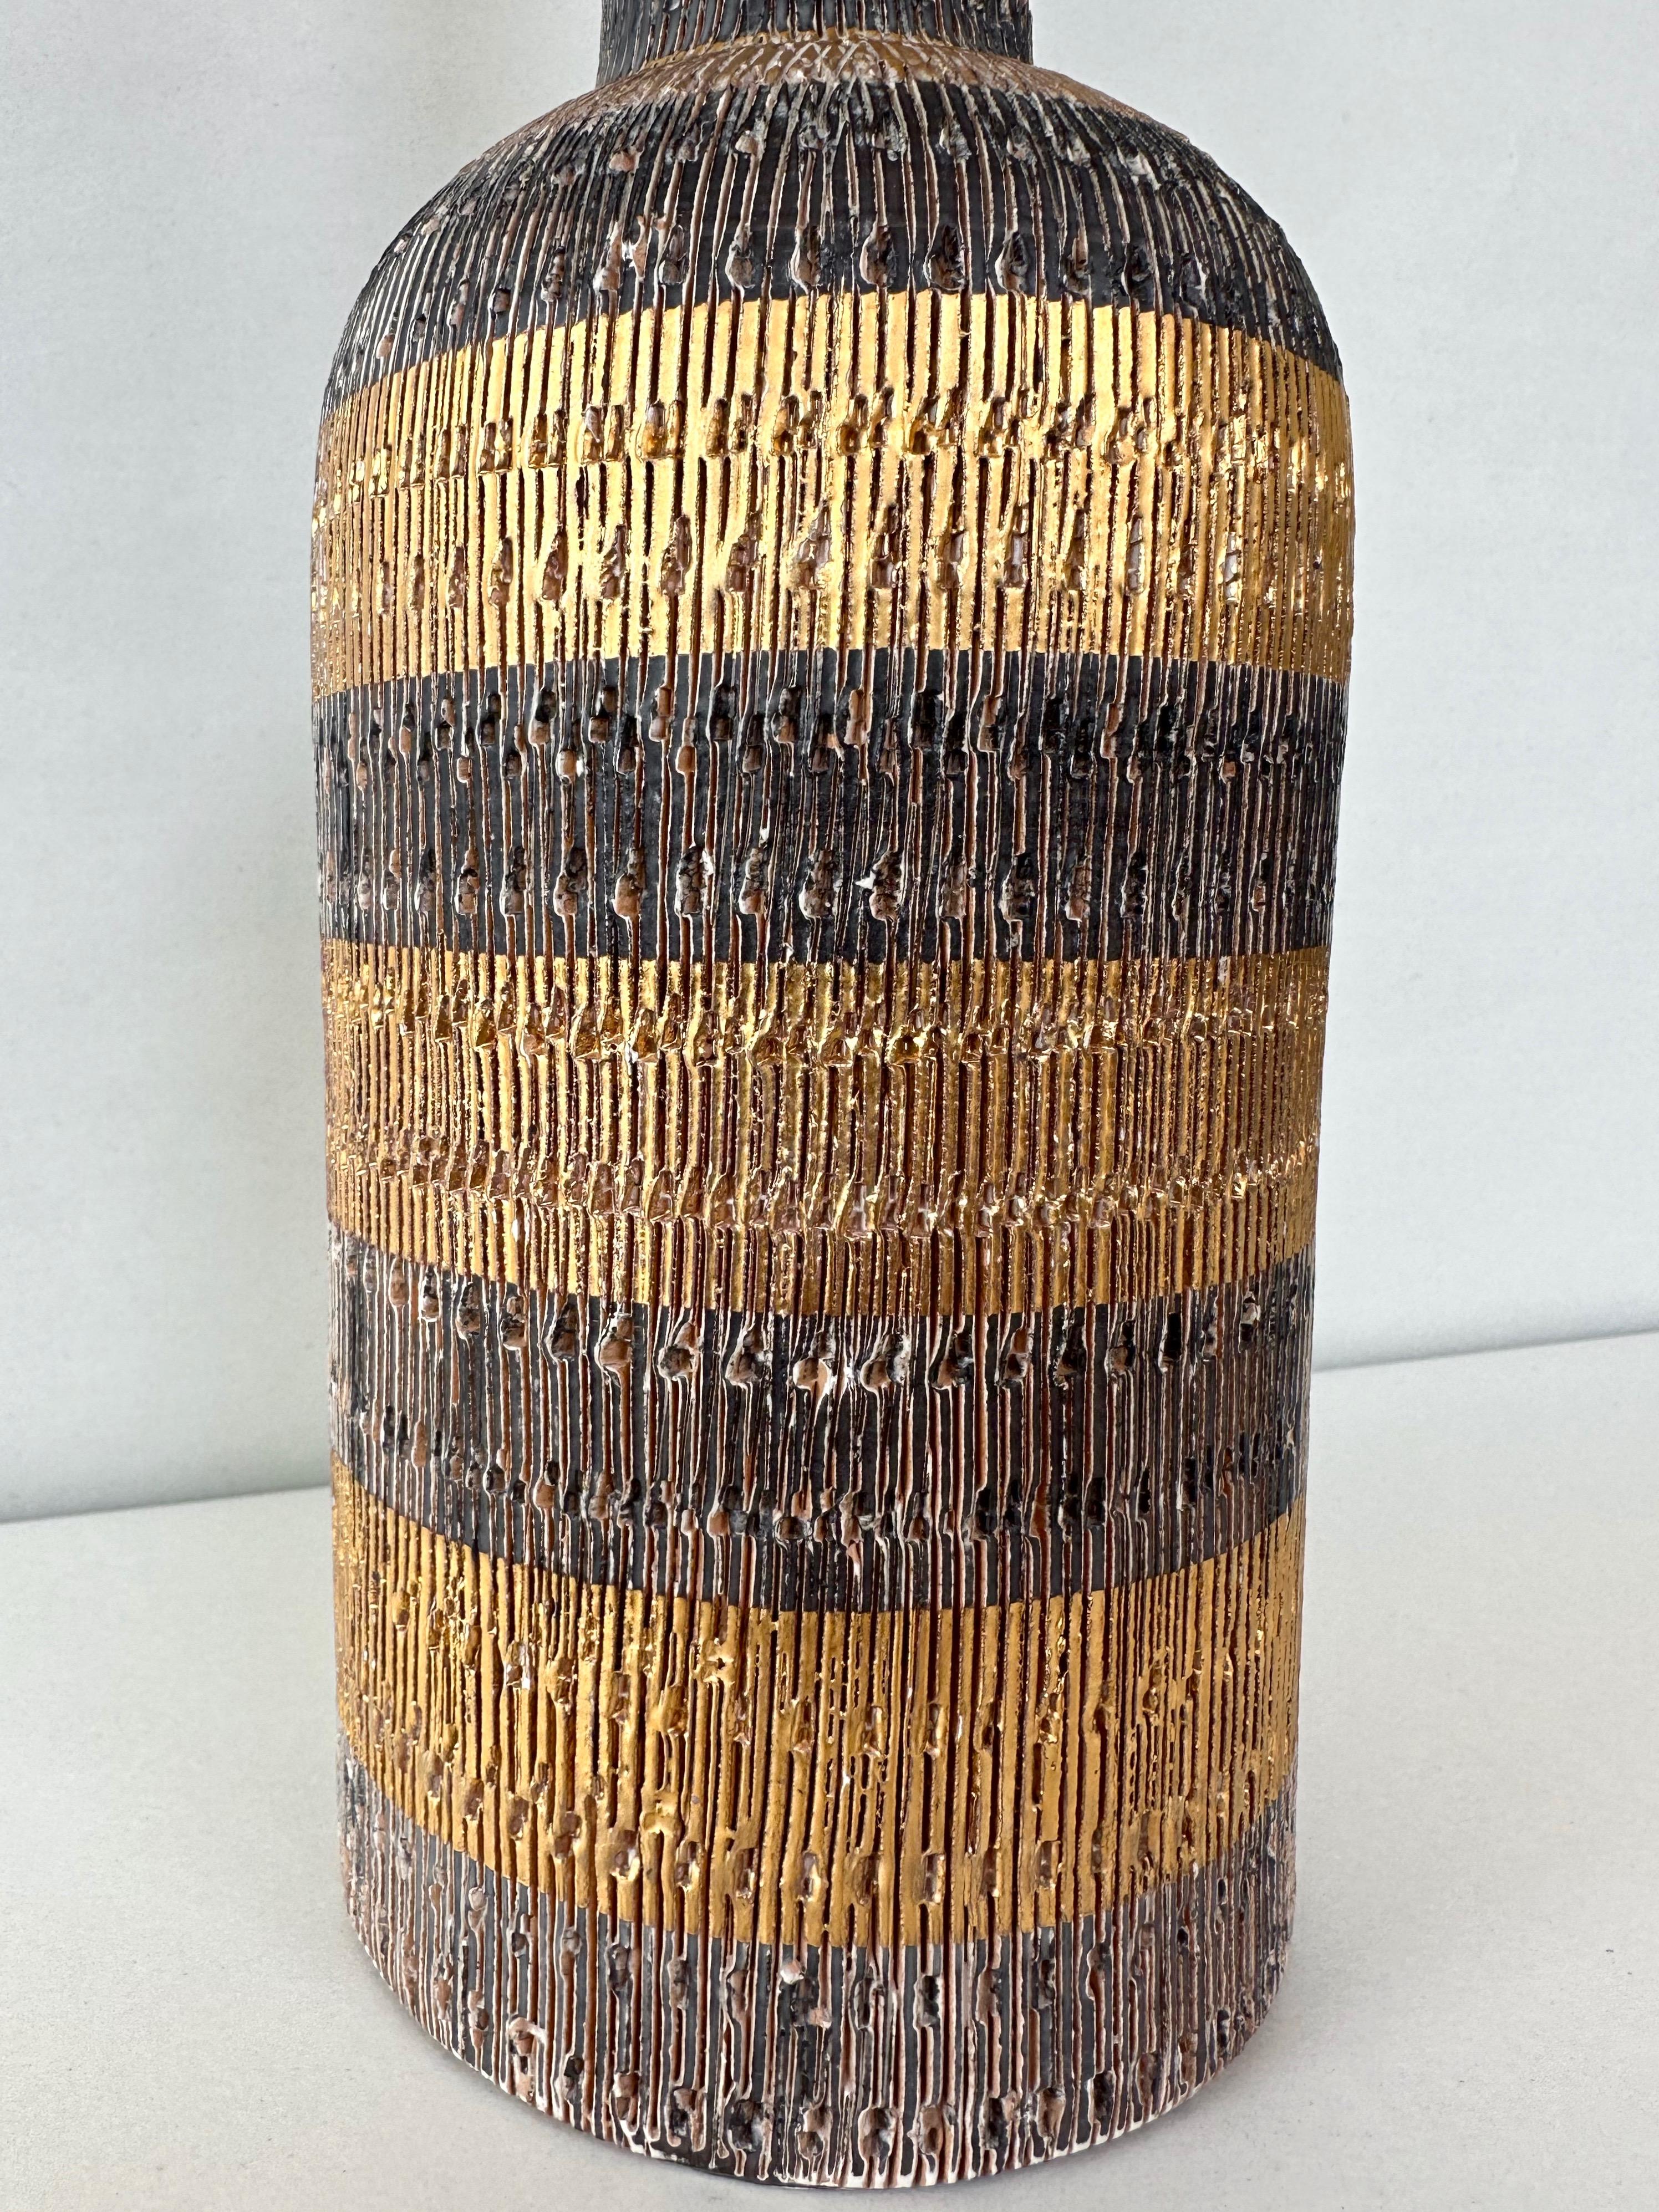 Aldo Londi for Bitossi via Raymor Seta Glazed Incised Pottery Bottle Vase, 1950s In Good Condition In San Francisco, CA